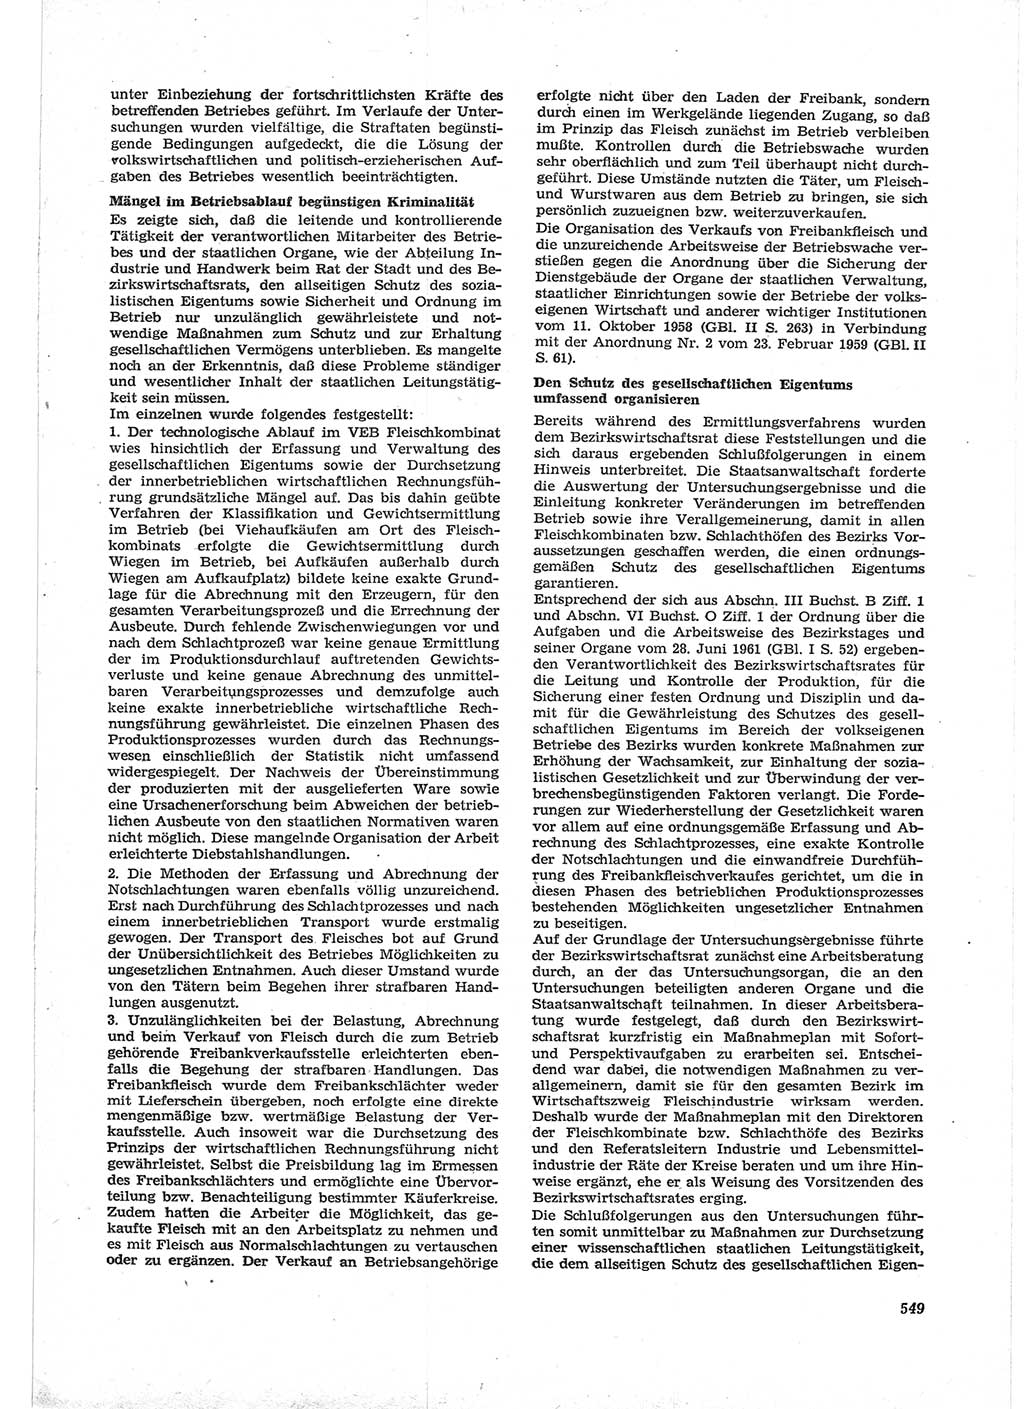 Neue Justiz (NJ), Zeitschrift für Recht und Rechtswissenschaft [Deutsche Demokratische Republik (DDR)], 17. Jahrgang 1963, Seite 549 (NJ DDR 1963, S. 549)